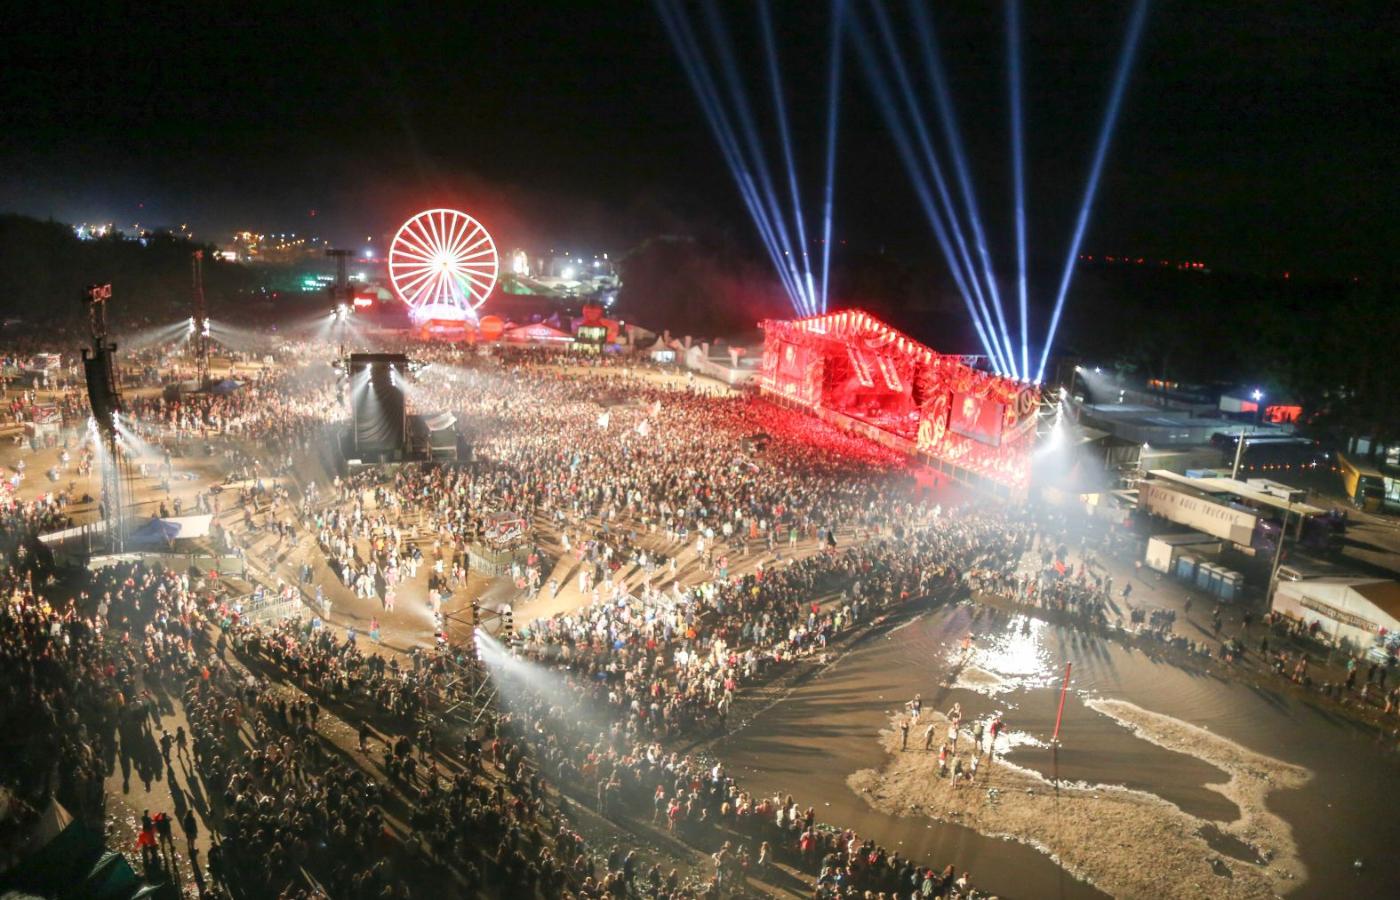 Duża Scena Przystanku Woodstock, dziś Pol’and’Rock Festival